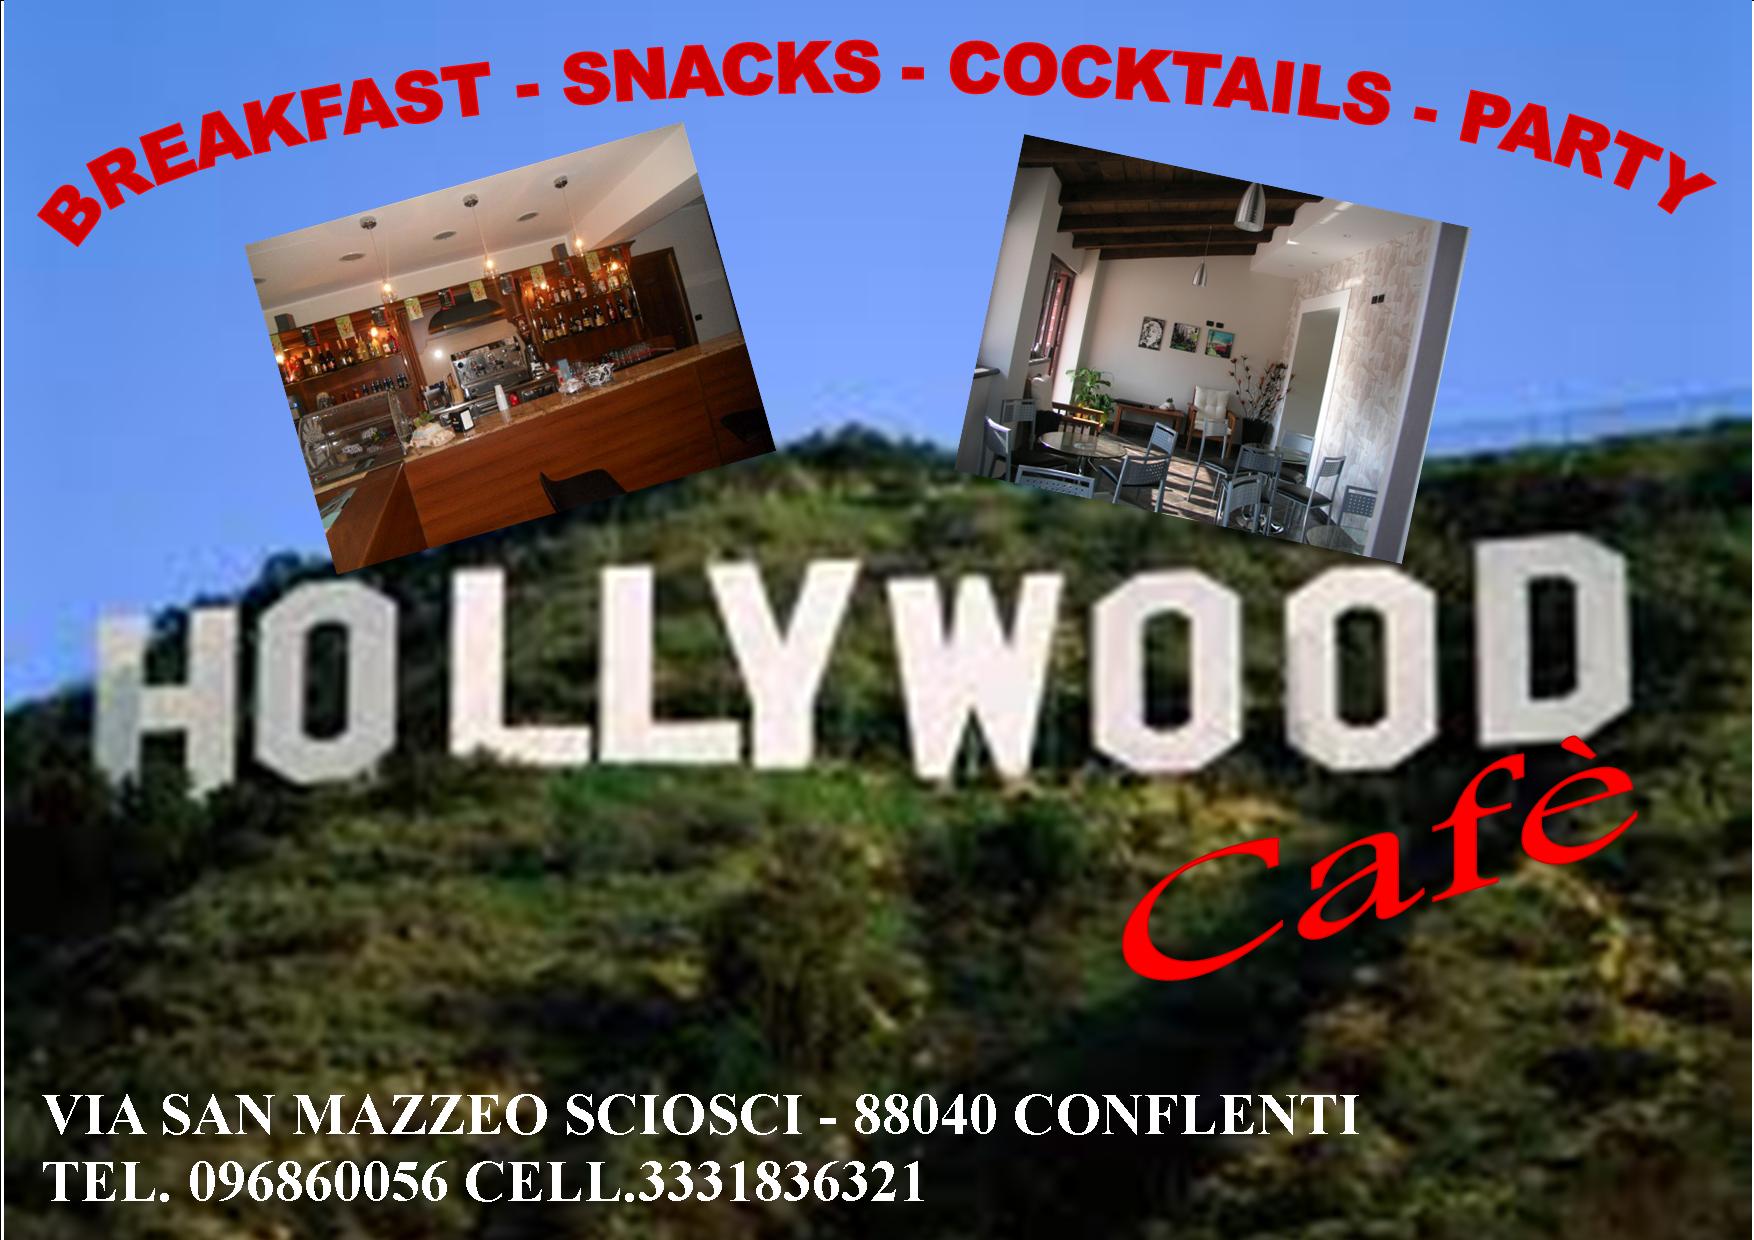 Hollywood cafè3